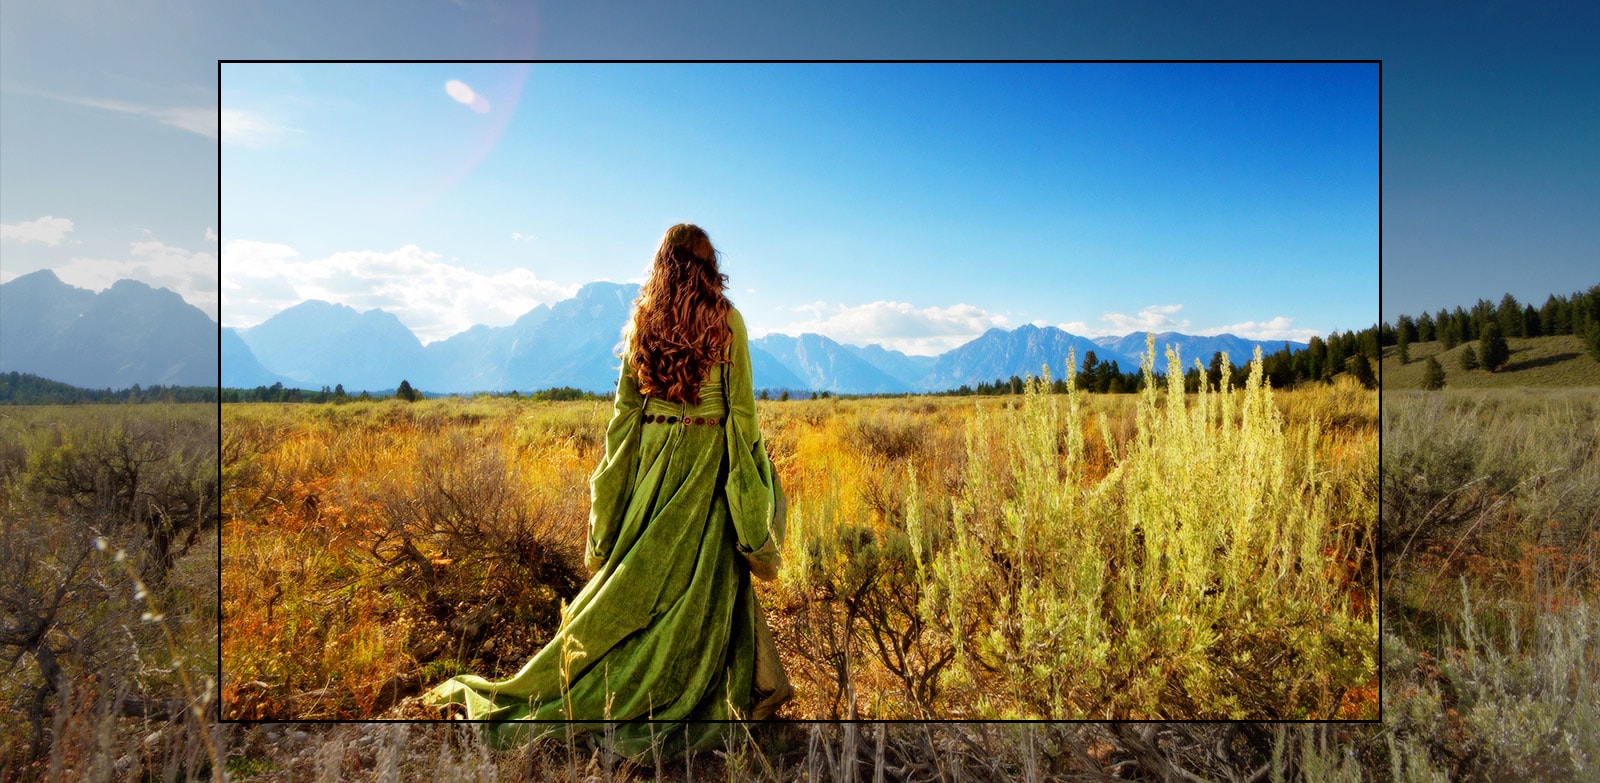 Una scena sullo schermo TV di un film fantasy in cui una donna si trova in un campo mentre guarda le montagne.